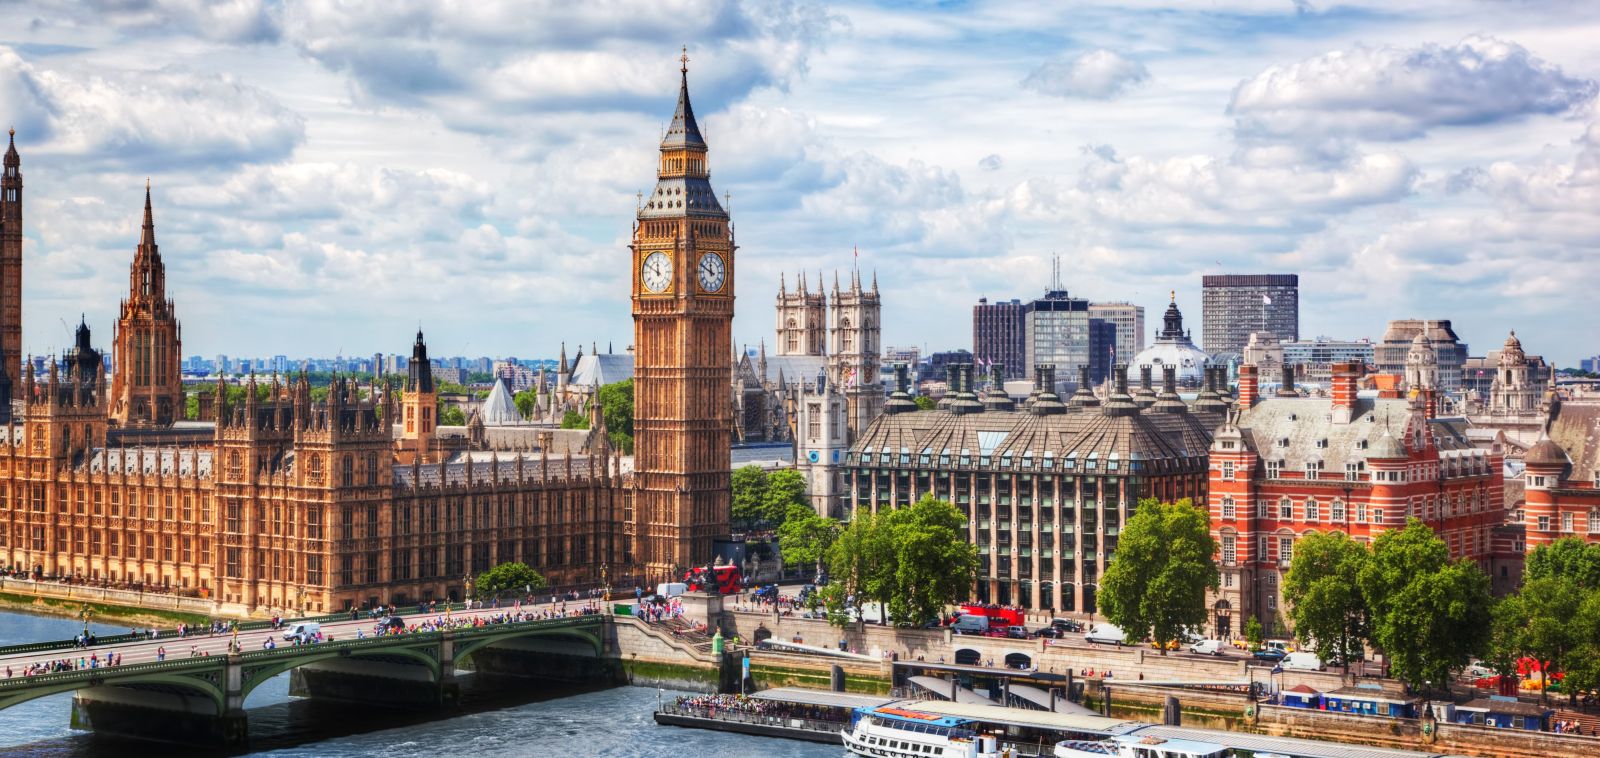 ce qu'il faut faire et visiter à Londres : Big Ben , La Tamise , London eye, National Gallery